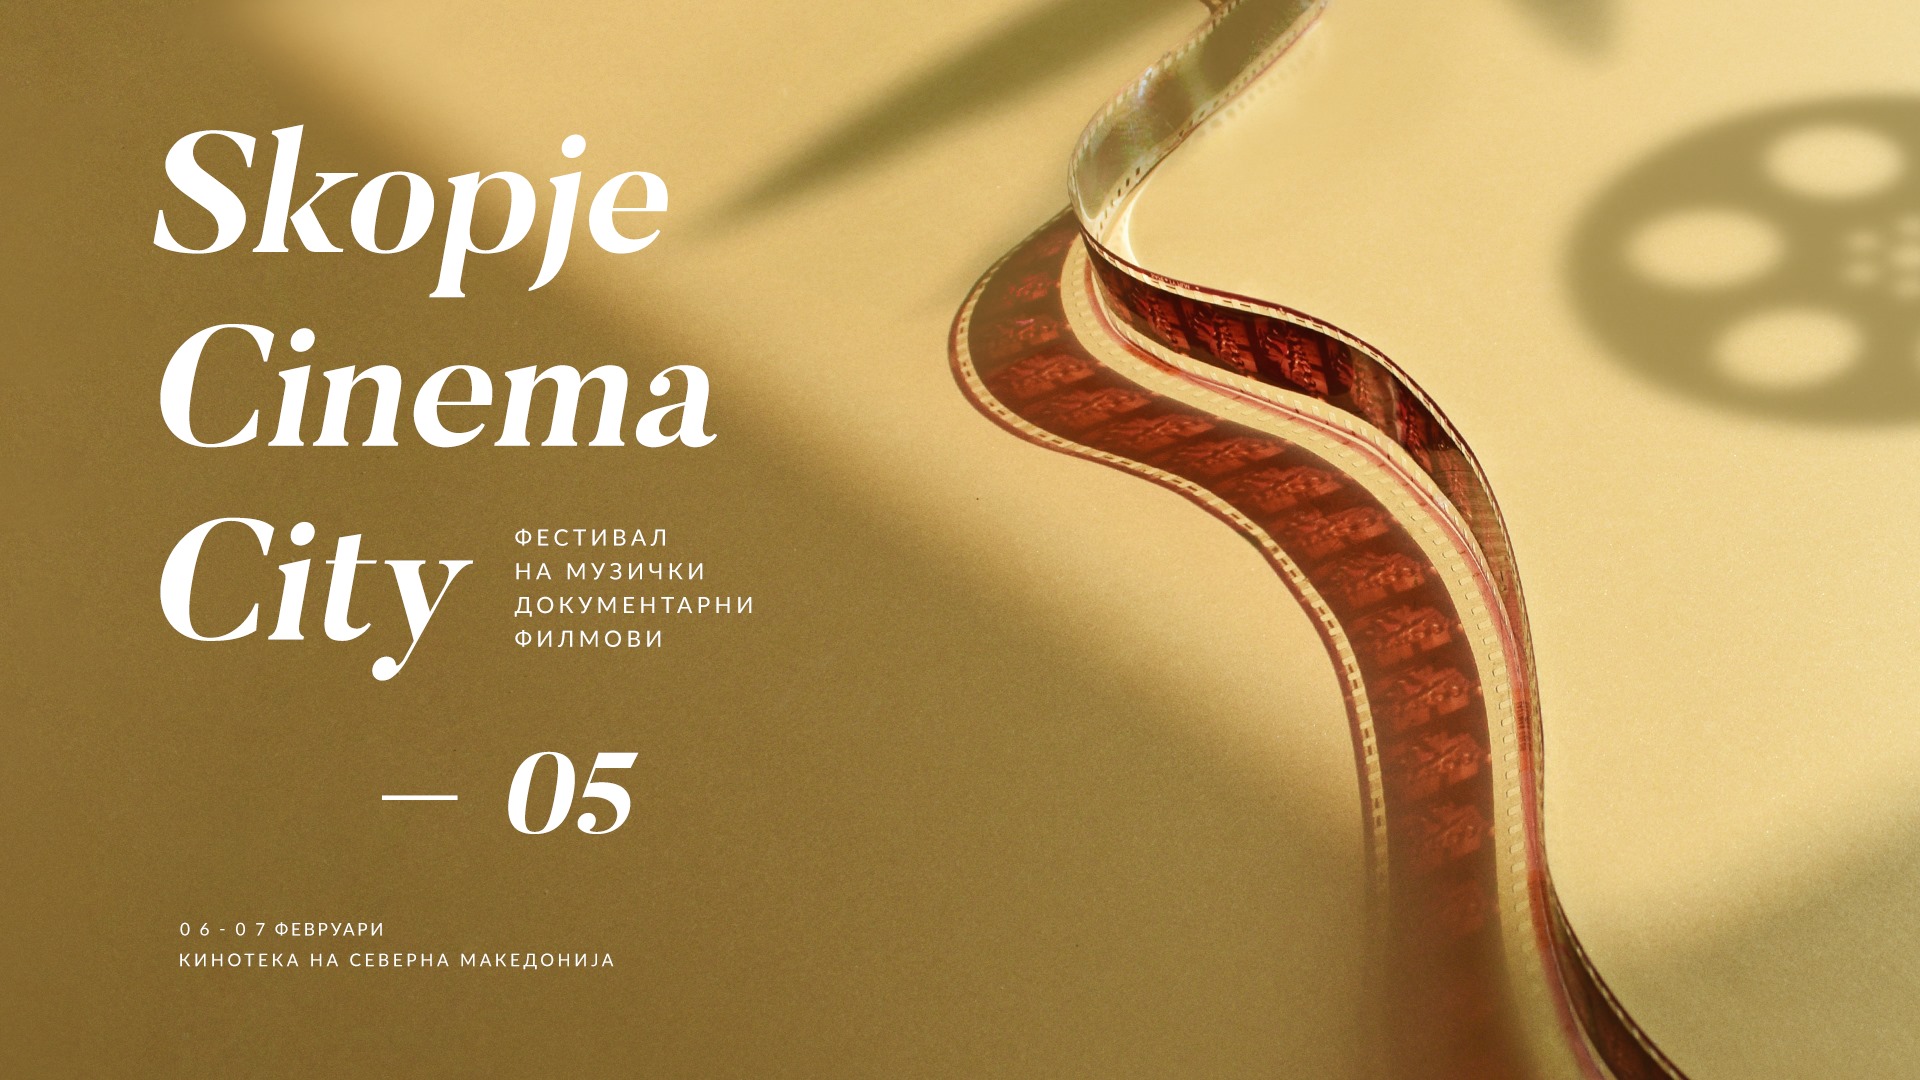 Skopje Cinema City – Фестивал на музички документарни филмови